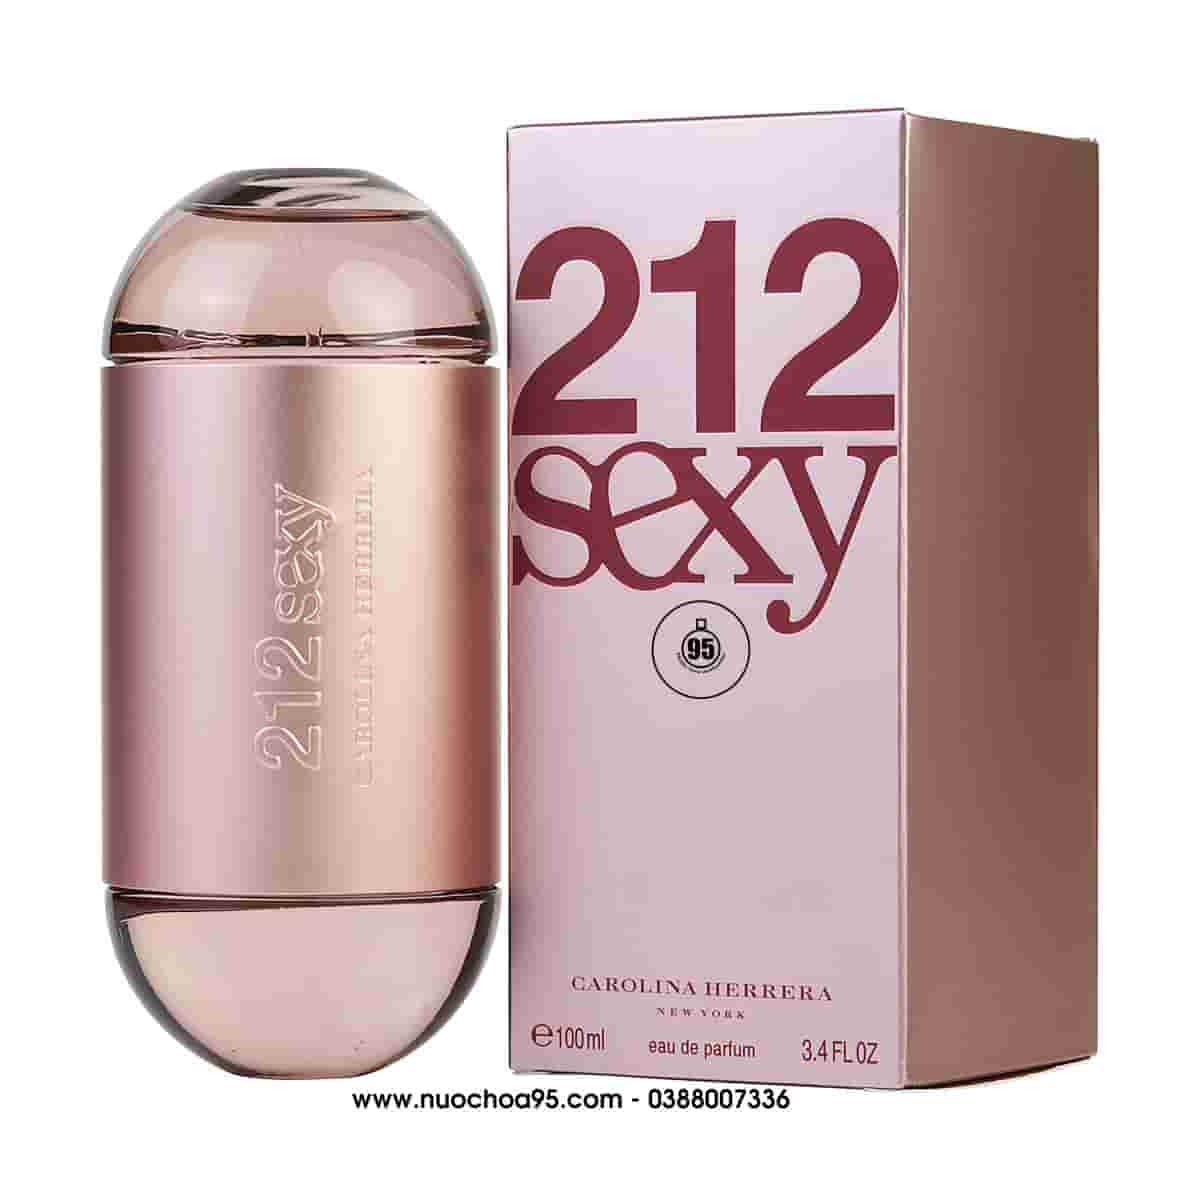 Nước hoa 212 Sexy For Women 